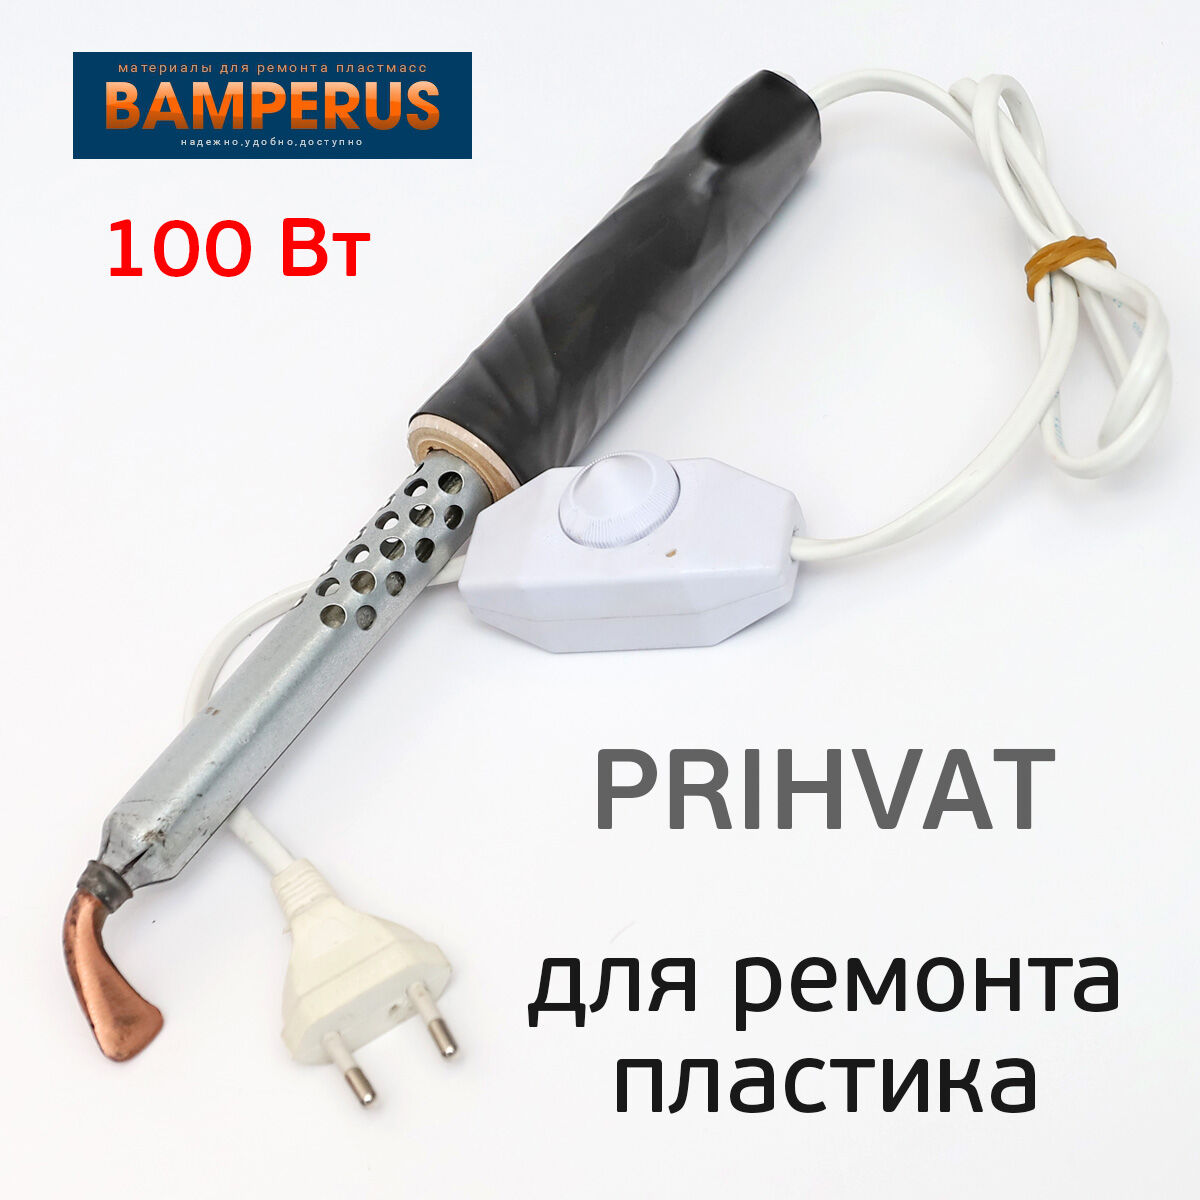 Паяльник Bamperus PRIHVAT 100Вт для ремонта пластика, бамперов